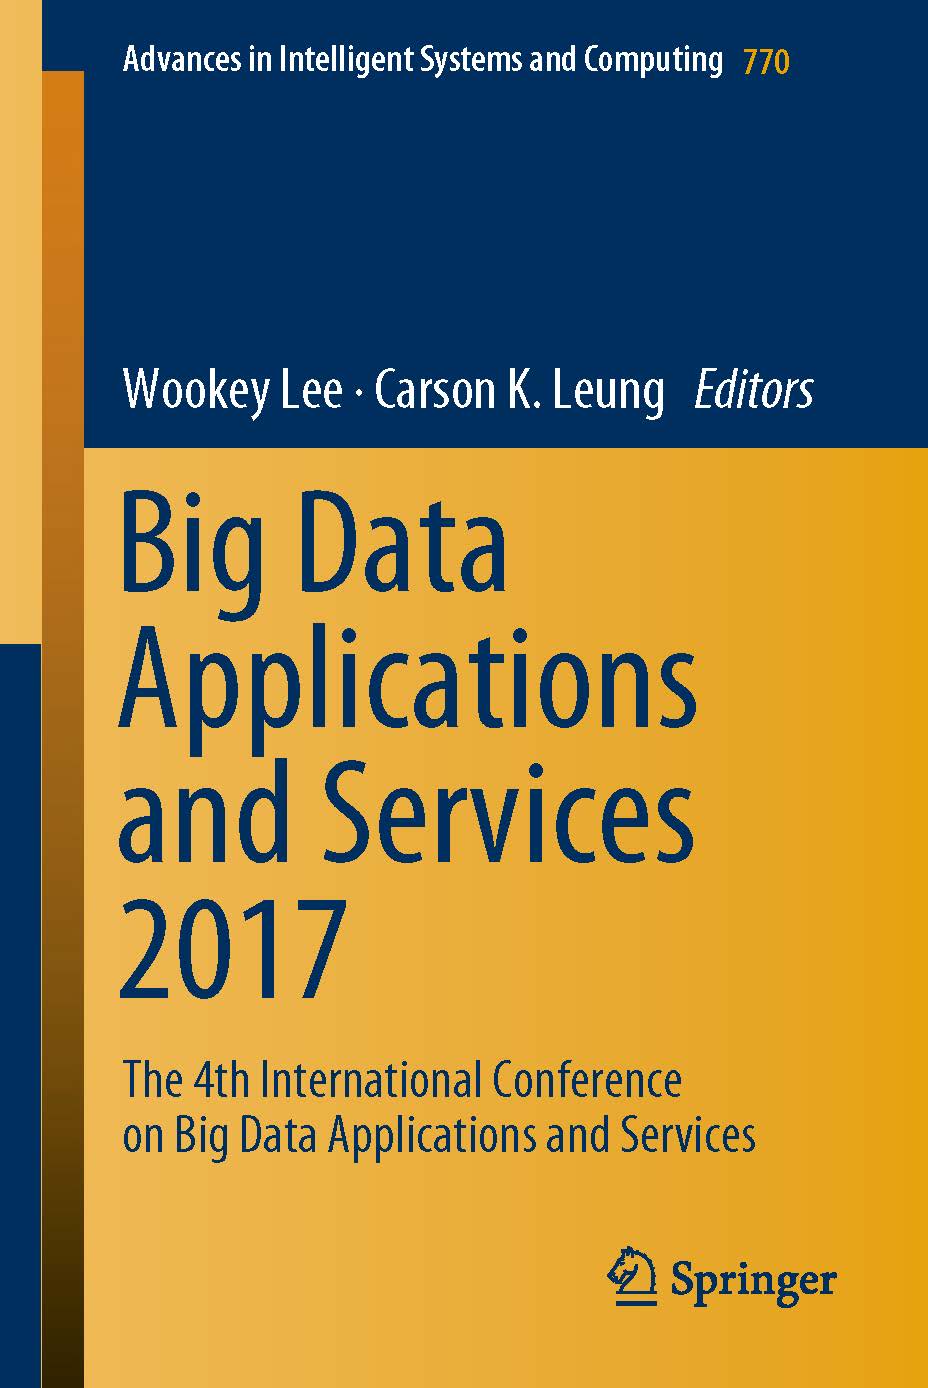 页面提取自－2019_Book_Big Data Applications and Services 2017.jpg